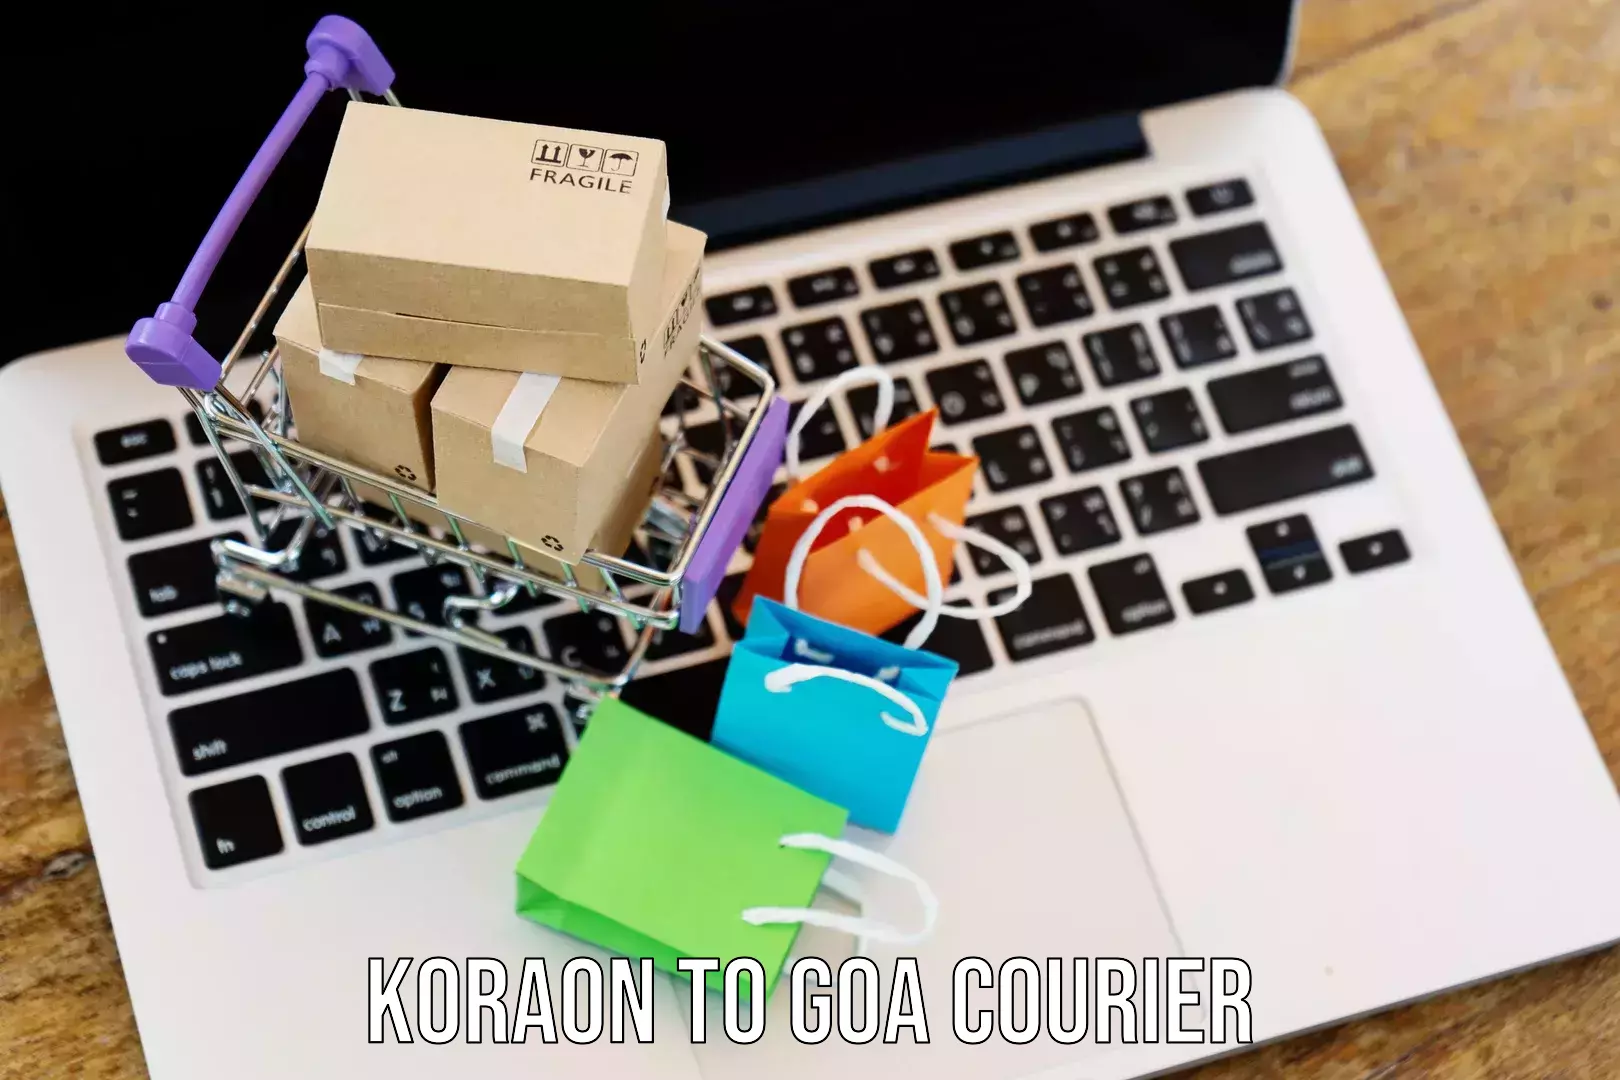 Next-day delivery options Koraon to Goa